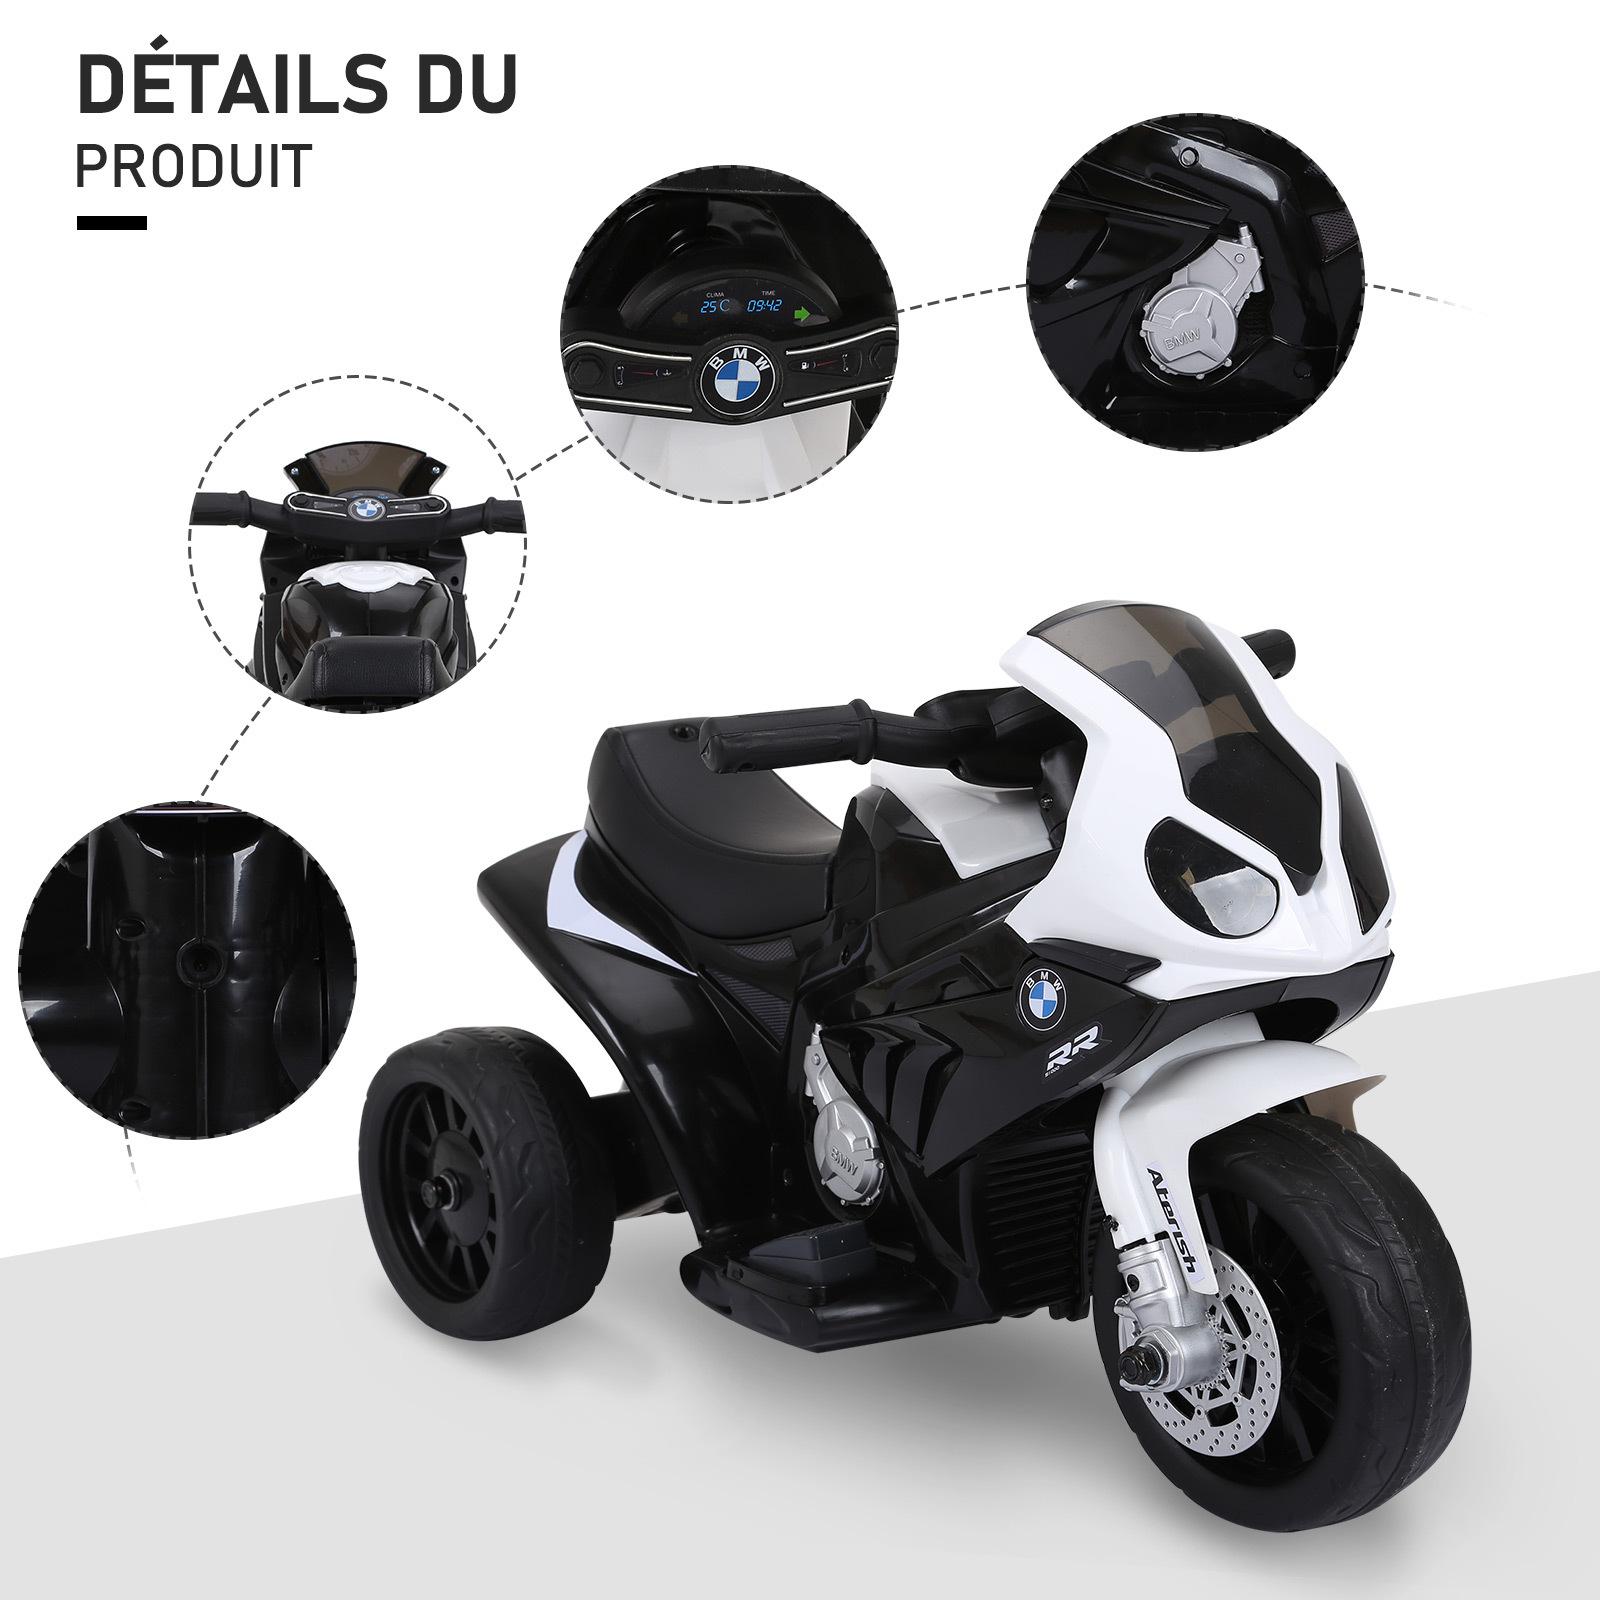 Moto électrique pour enfants 3 roues 6 V 2,5 Km/h effets lumineux et sonores noir BMW S1000 RR